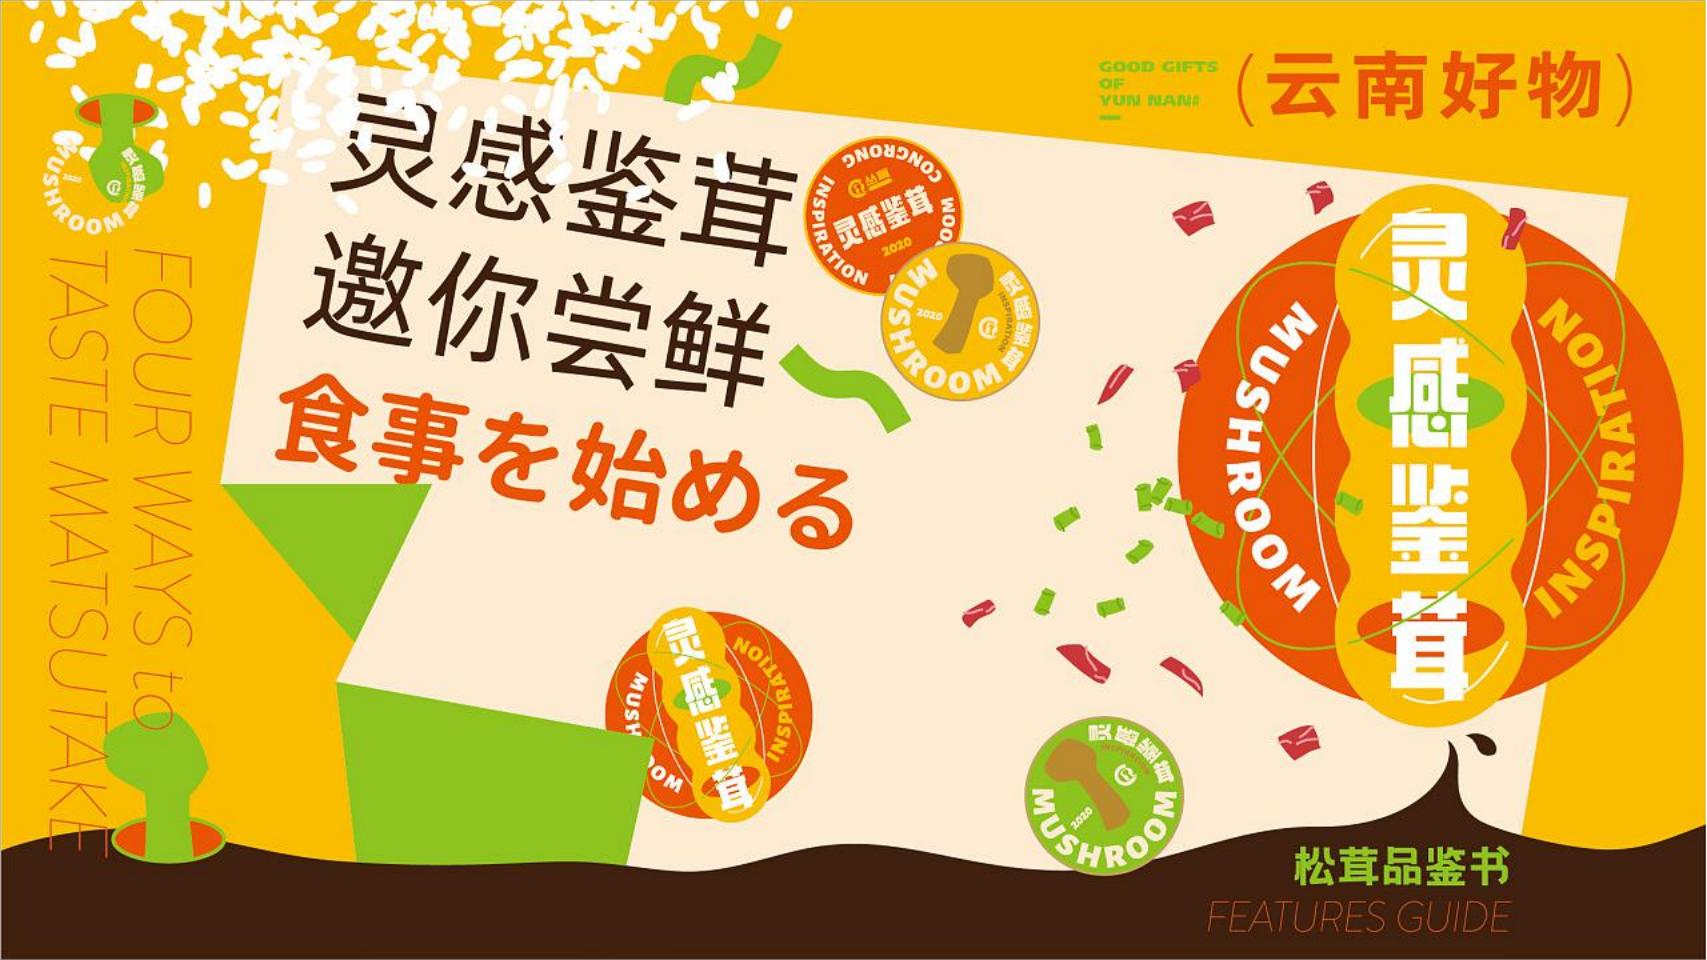 云南好物水果品牌形象包装设计手册